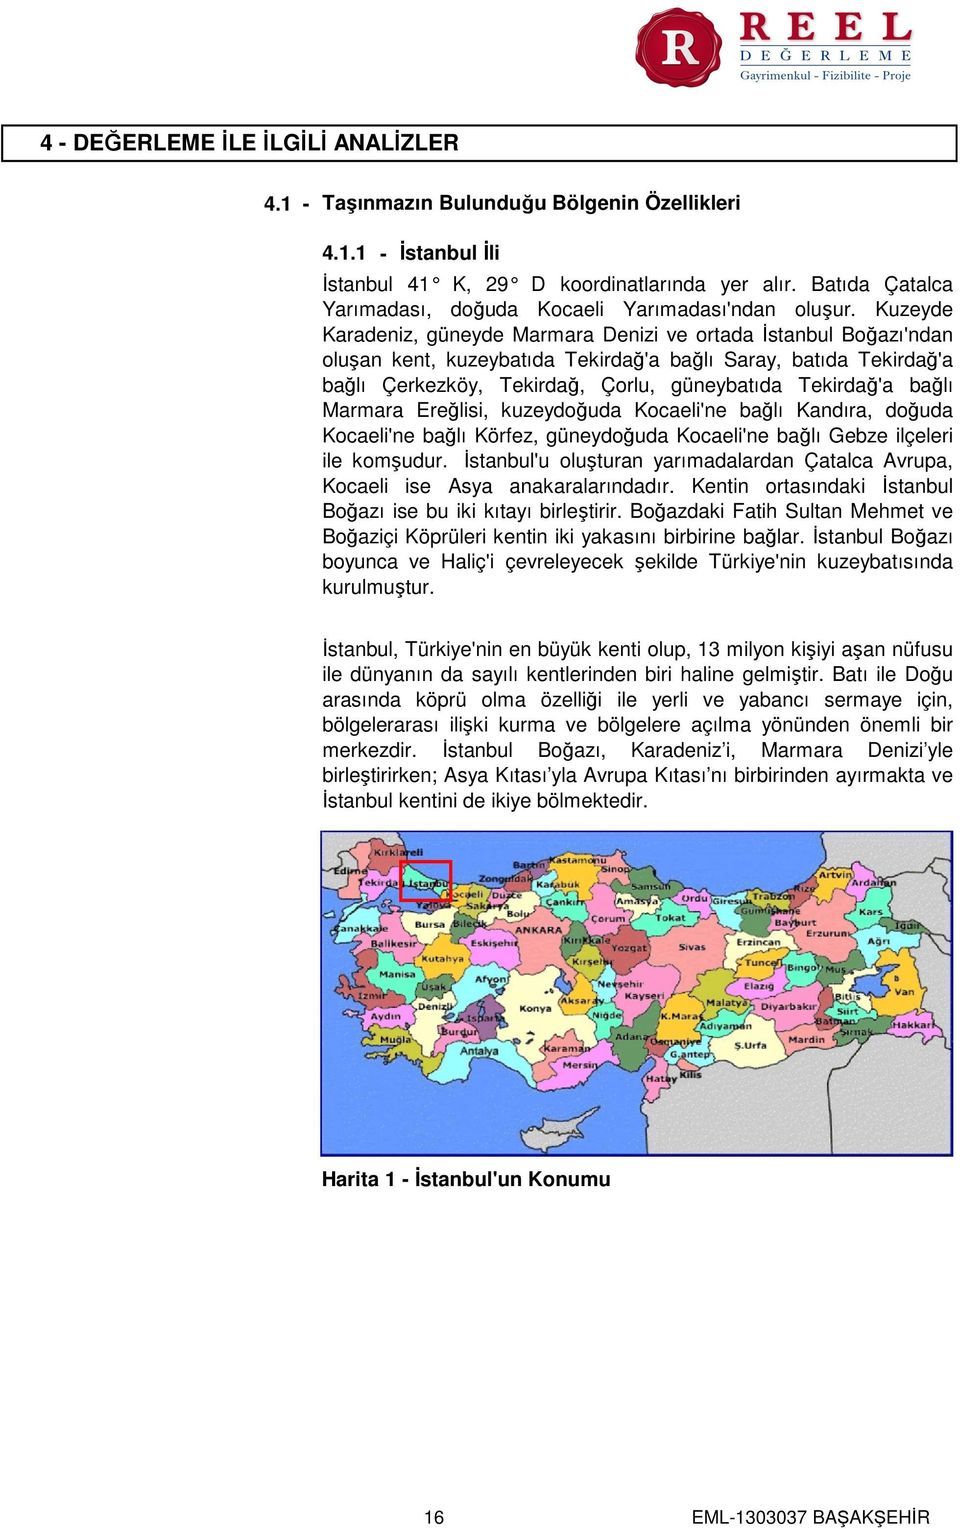 Kuzeyde Karadeniz, güneyde Marmara Denizi ve ortada İstanbul Boğazı'ndan oluşan kent, kuzeybatıda Tekirdağ'a bağlı Saray, batıda Tekirdağ'a bağlı Çerkezköy, Tekirdağ, Çorlu, güneybatıda Tekirdağ'a